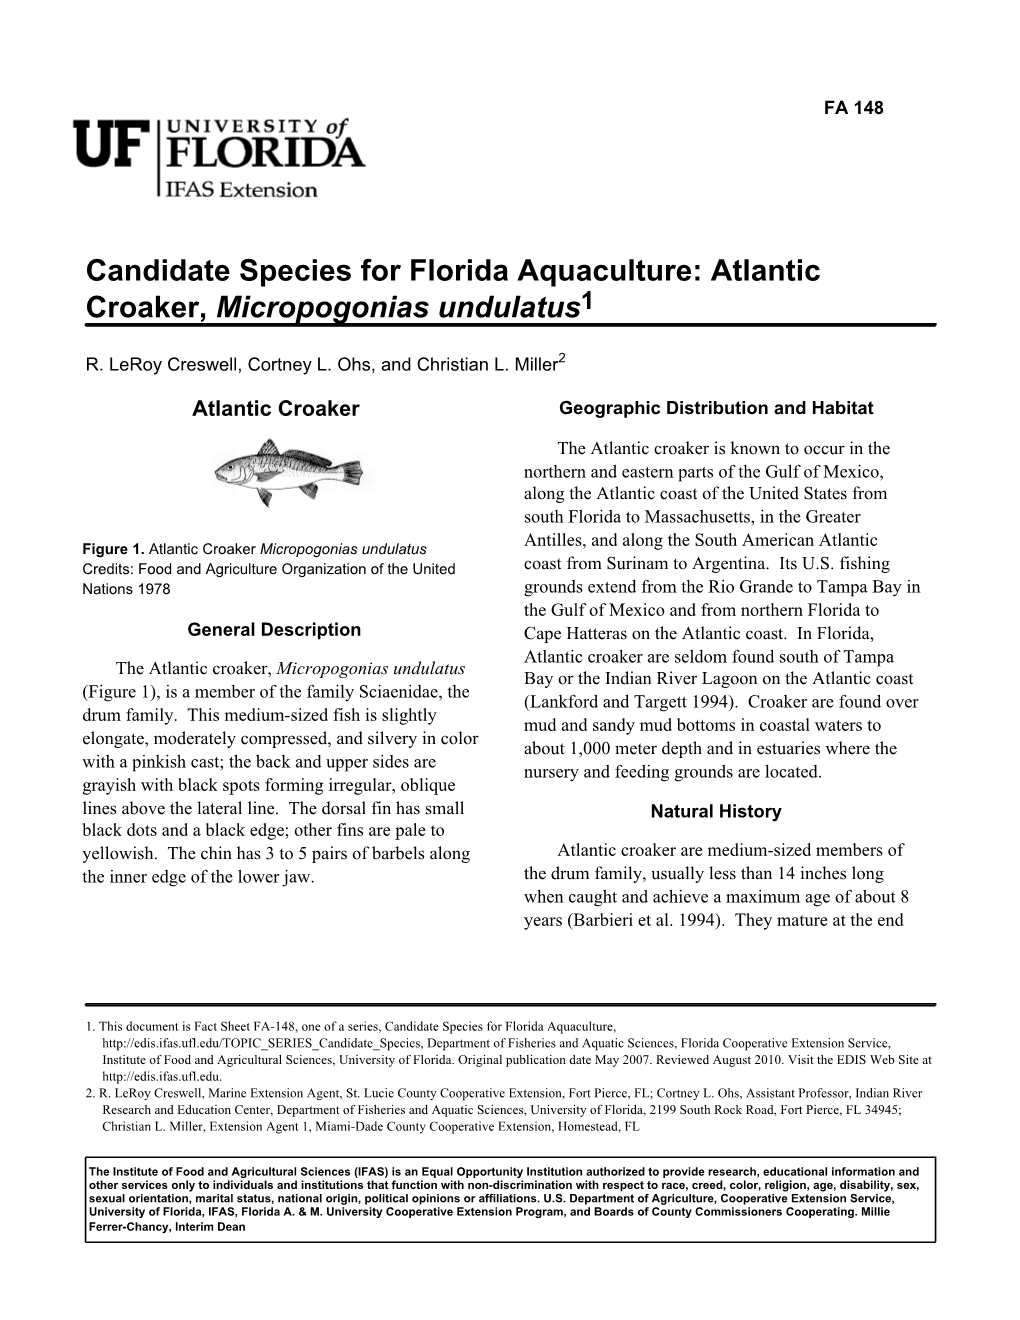 Candidate Species for Florida Aquaculture: Atlantic Croaker, Micropogonias Undulatus1